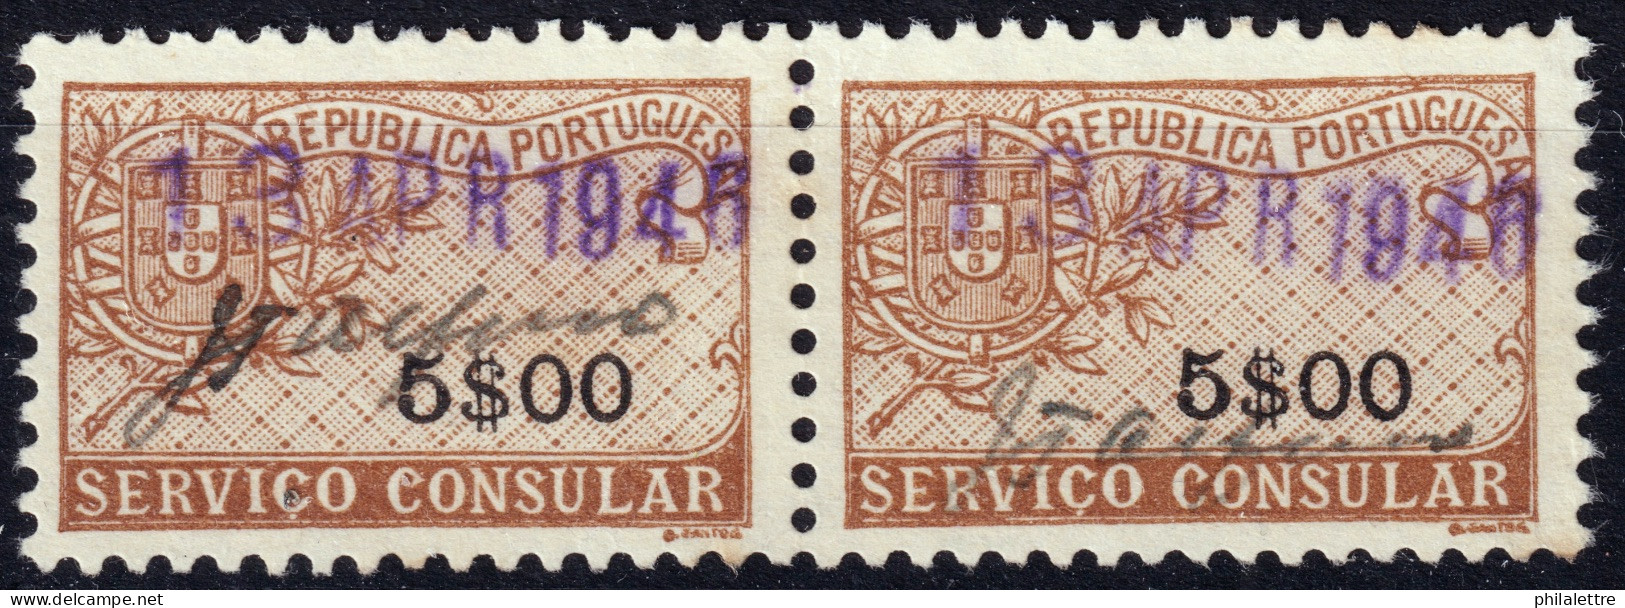 PORTUGAL - 1946 Pair Of 5.00esc. "SERVICIO CONSULAR" Fiscal Revenue Stamp - Very Fine Used - Gebruikt